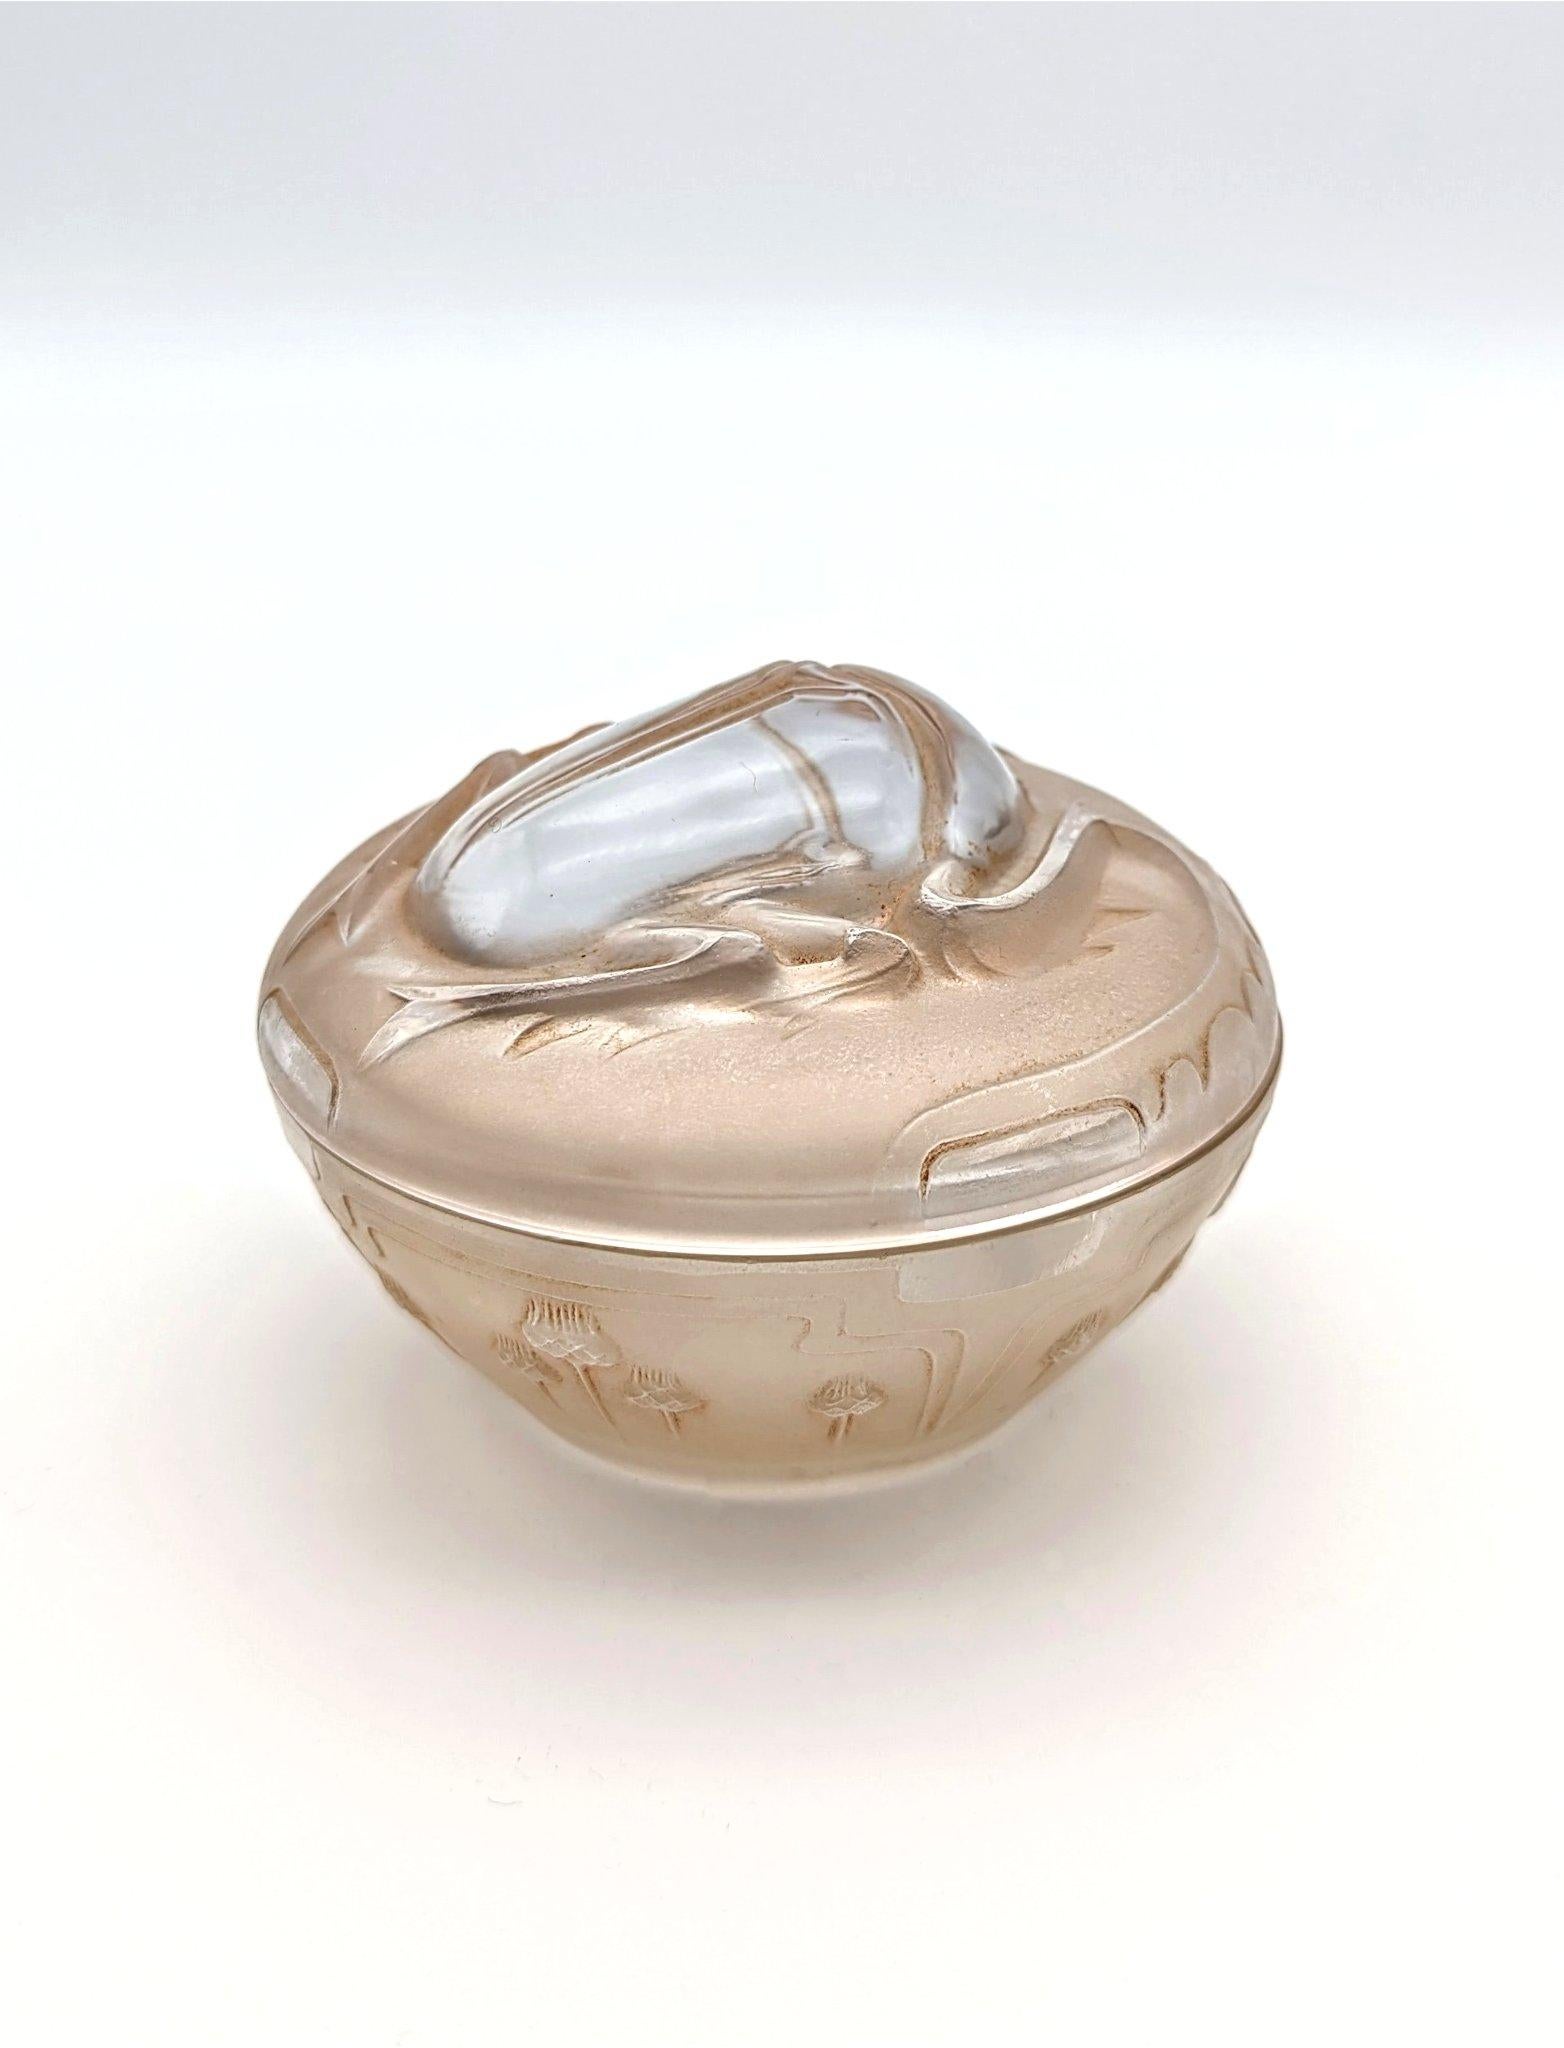 Ein wunderschönes frühes Design von René Lalique für den Parfümhersteller L.T.Piver in Paris. Die Serie Scarabée zeigte Skarabäen auf den Parfümflaschen von Piver in verschiedenen Größen und umfasste auch diese Schachtel für Creme. Dokumentiert im 